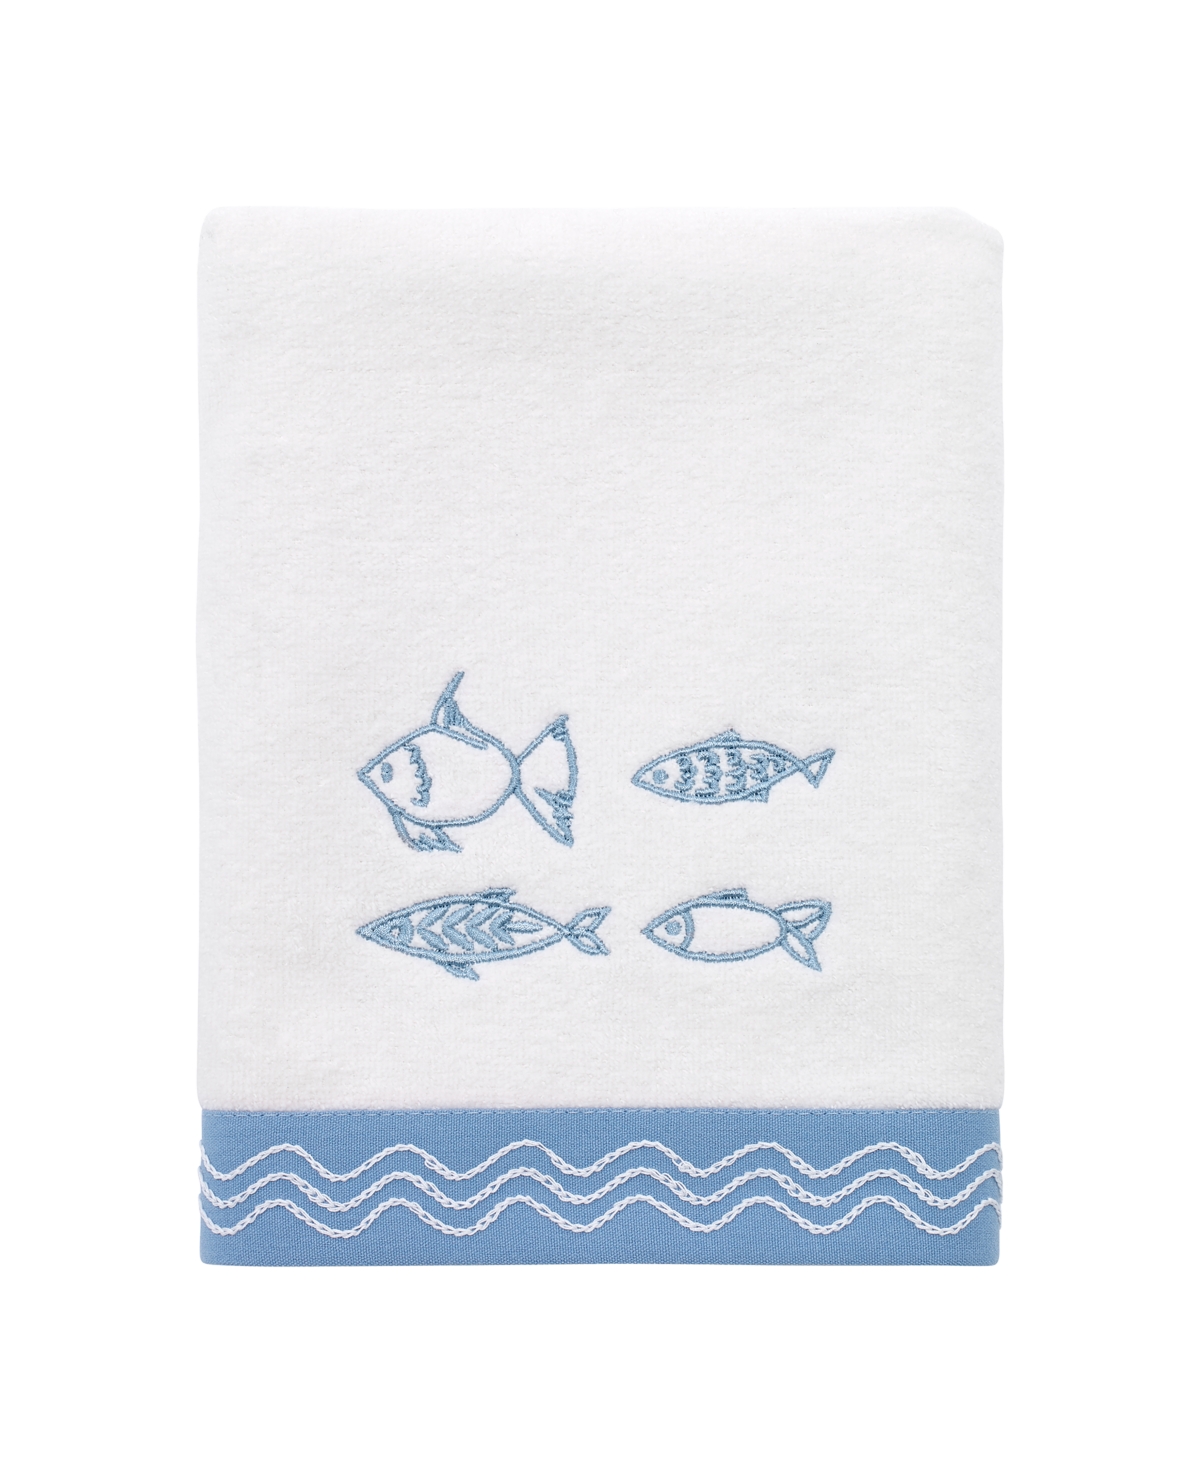 Avanti Fin Bay Decorative Hand Towel Bedding In White